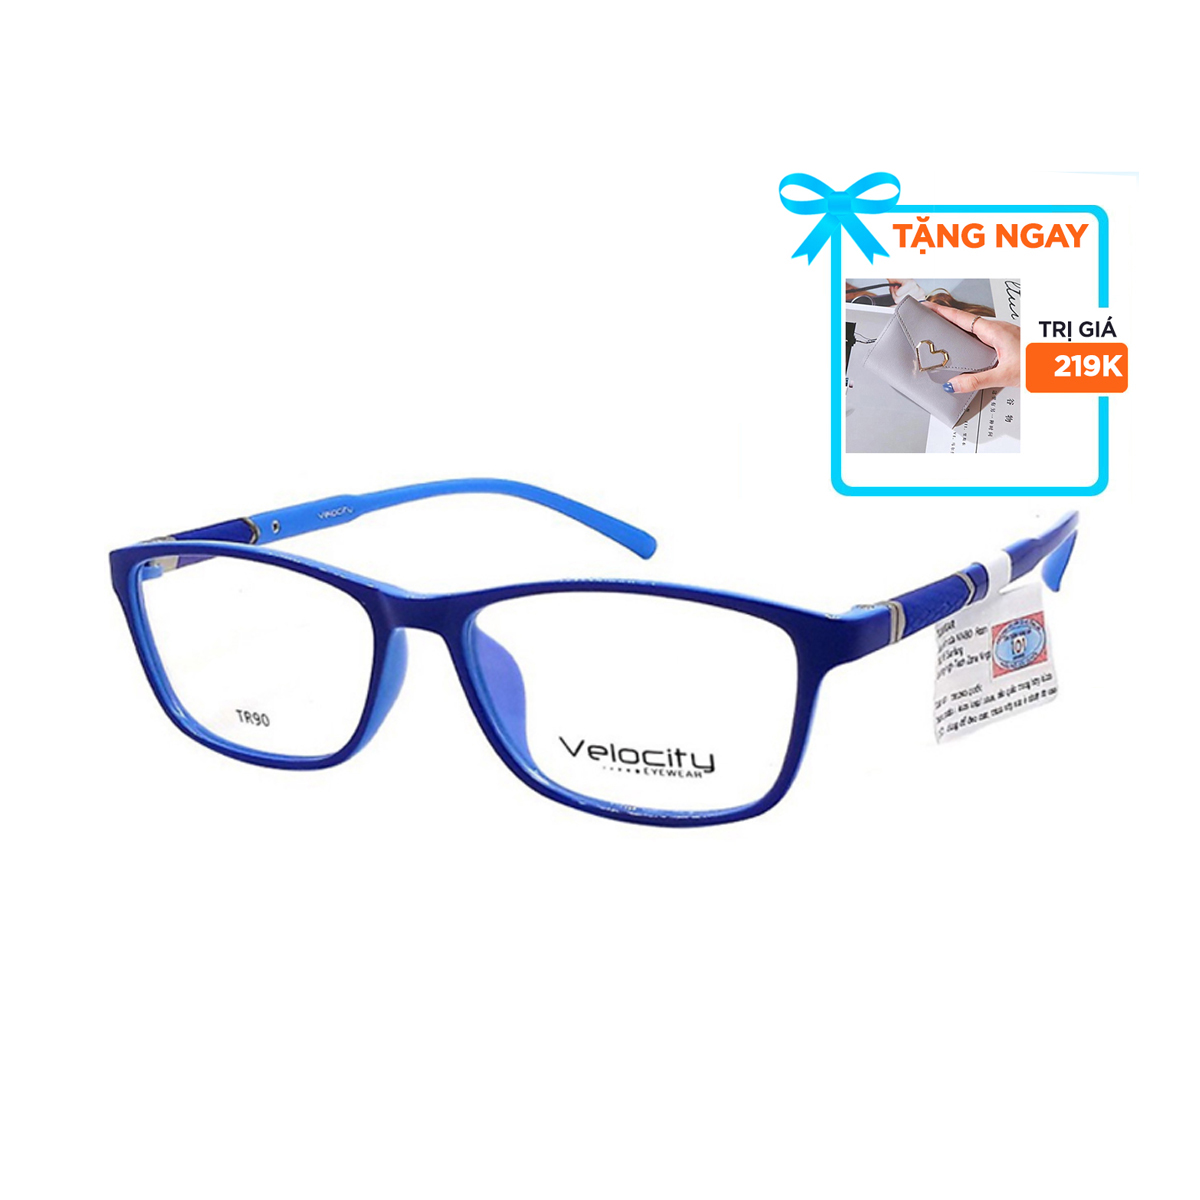 Gọng kính, mắt kính chính hãng VELOCITY VL36459 162 - Tặng 1 ví cầm tay (màu ngẫu nhiên)